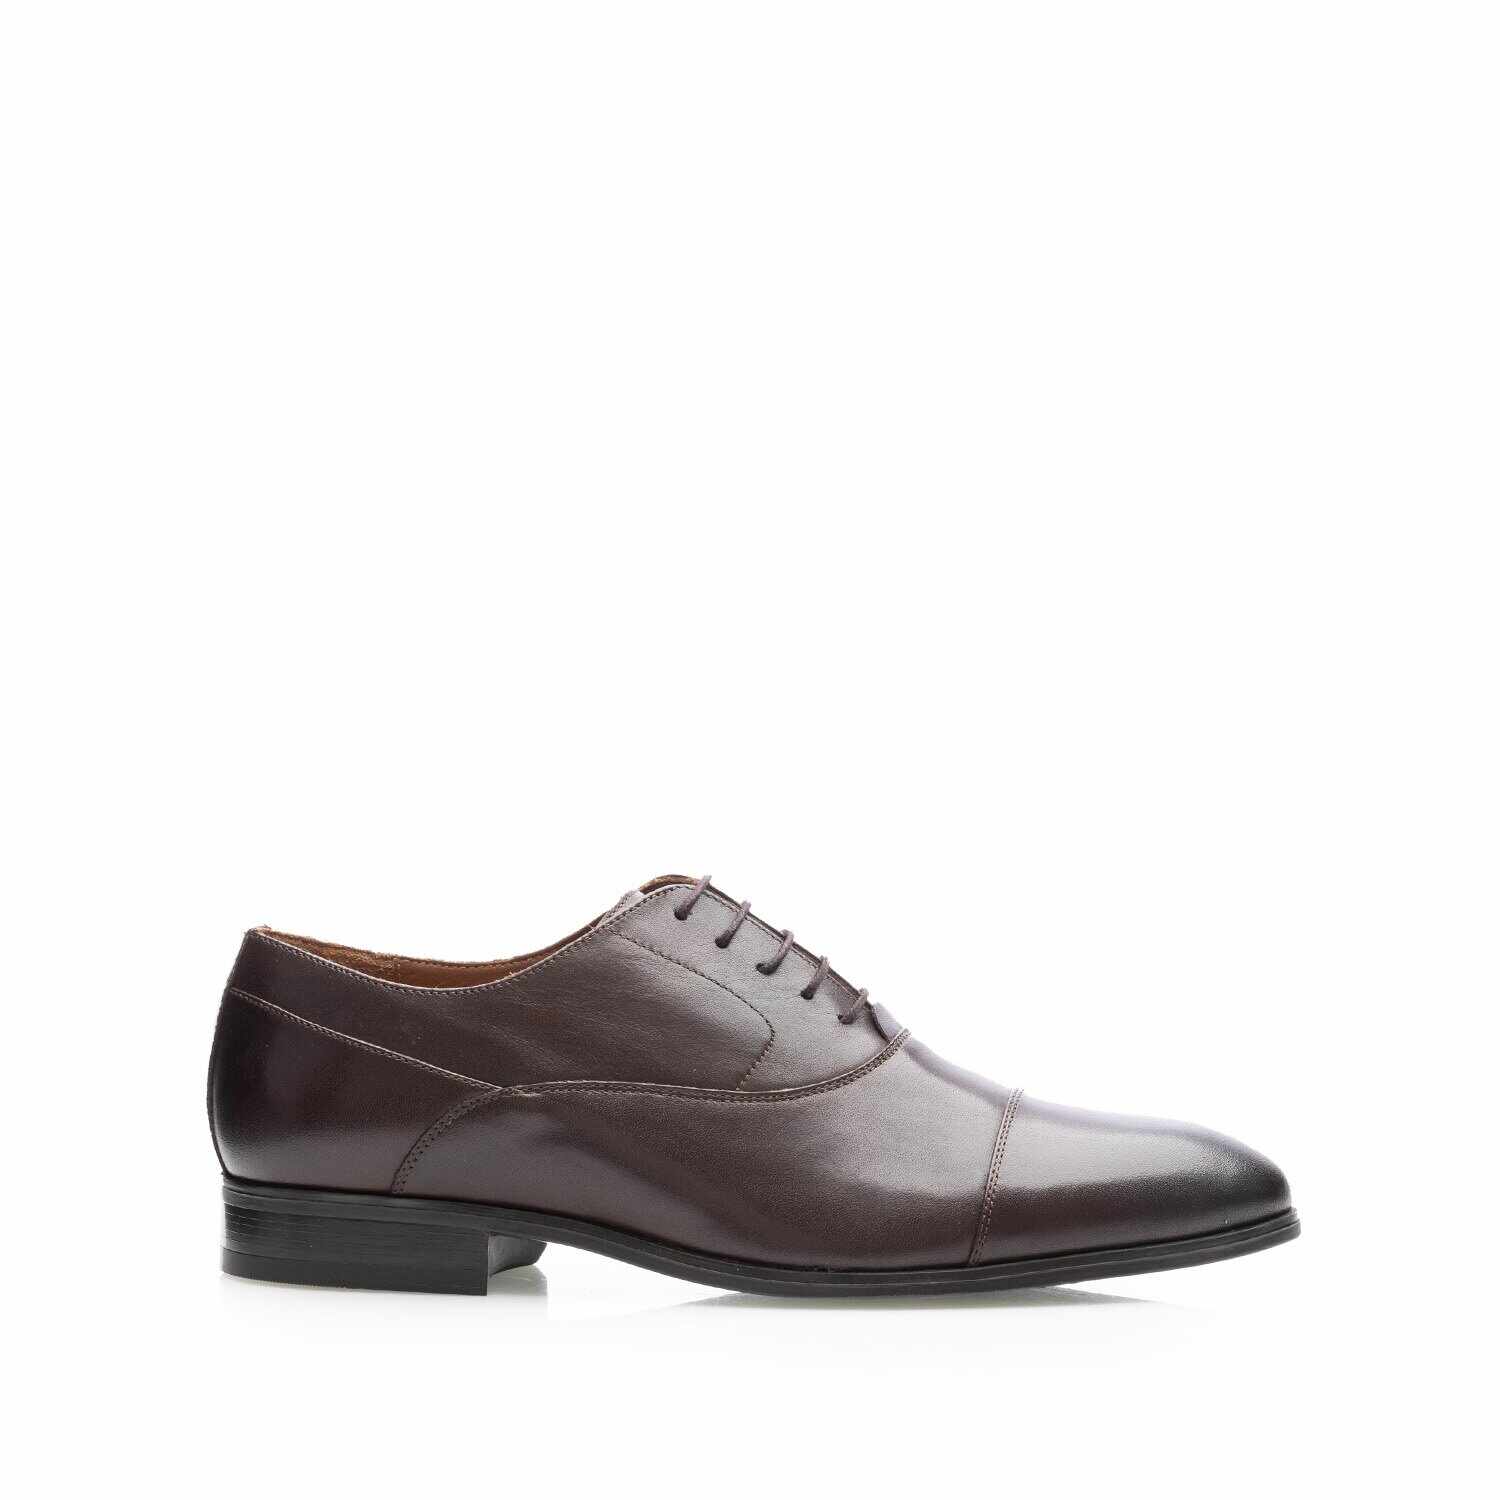 Pantofi casual bărbați din piele naturală, Leofex - 585 Mogano Box